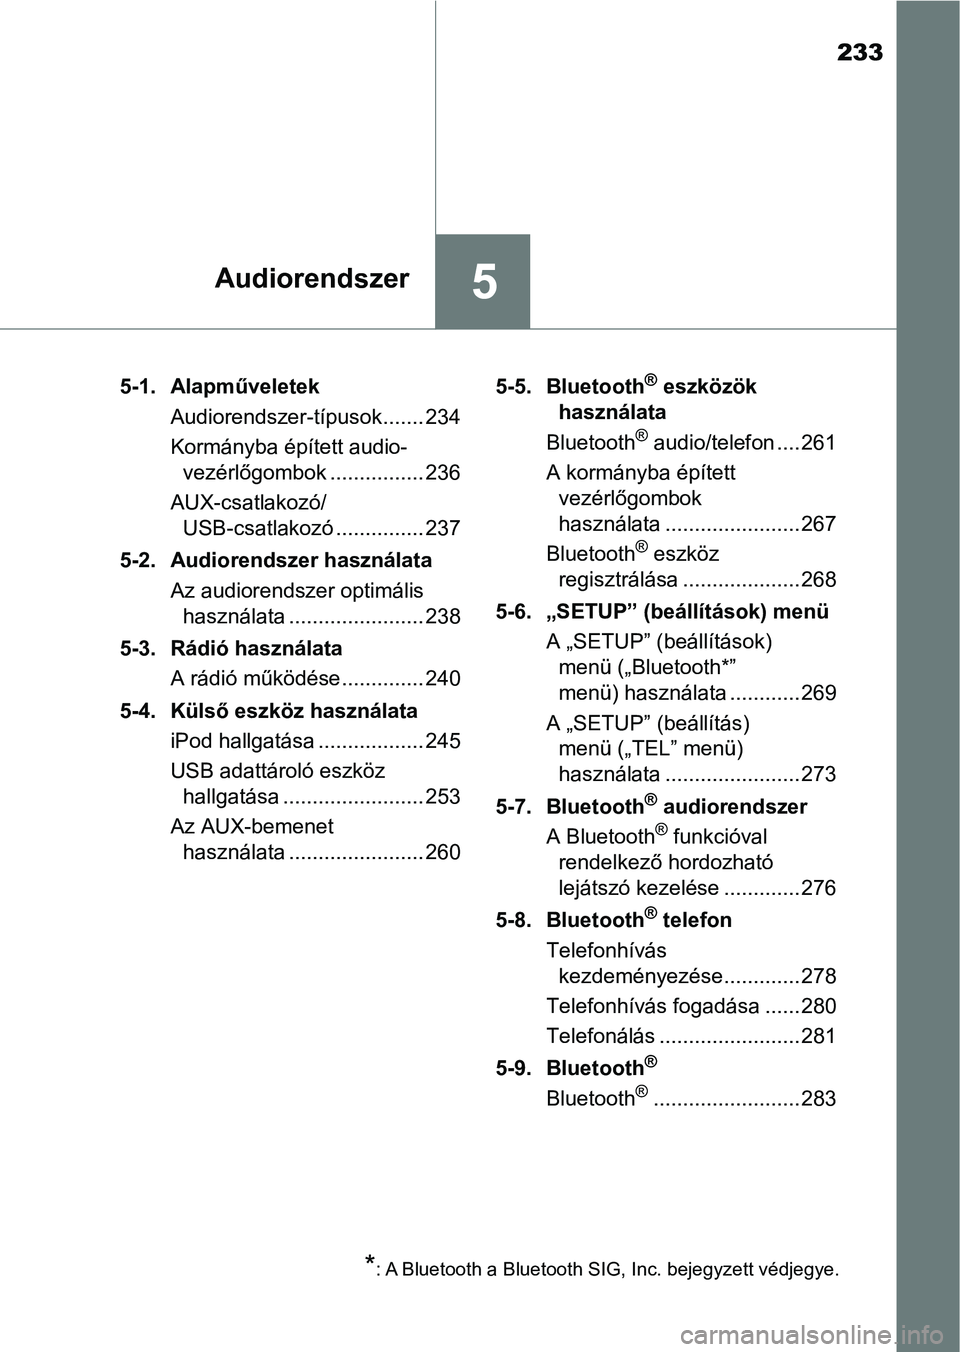 TOYOTA AYGO 2018  Kezelési útmutató (in Hungarian) 233
5Audiorendszer
5-1. AlapműveletekAudiorendszer-típusok ....... 234
Kormányba épített audio-vezérlőgombok ................ 236
AUX-csatlakozó/ USB-csatlakozó ............... 237
5-2. Audio